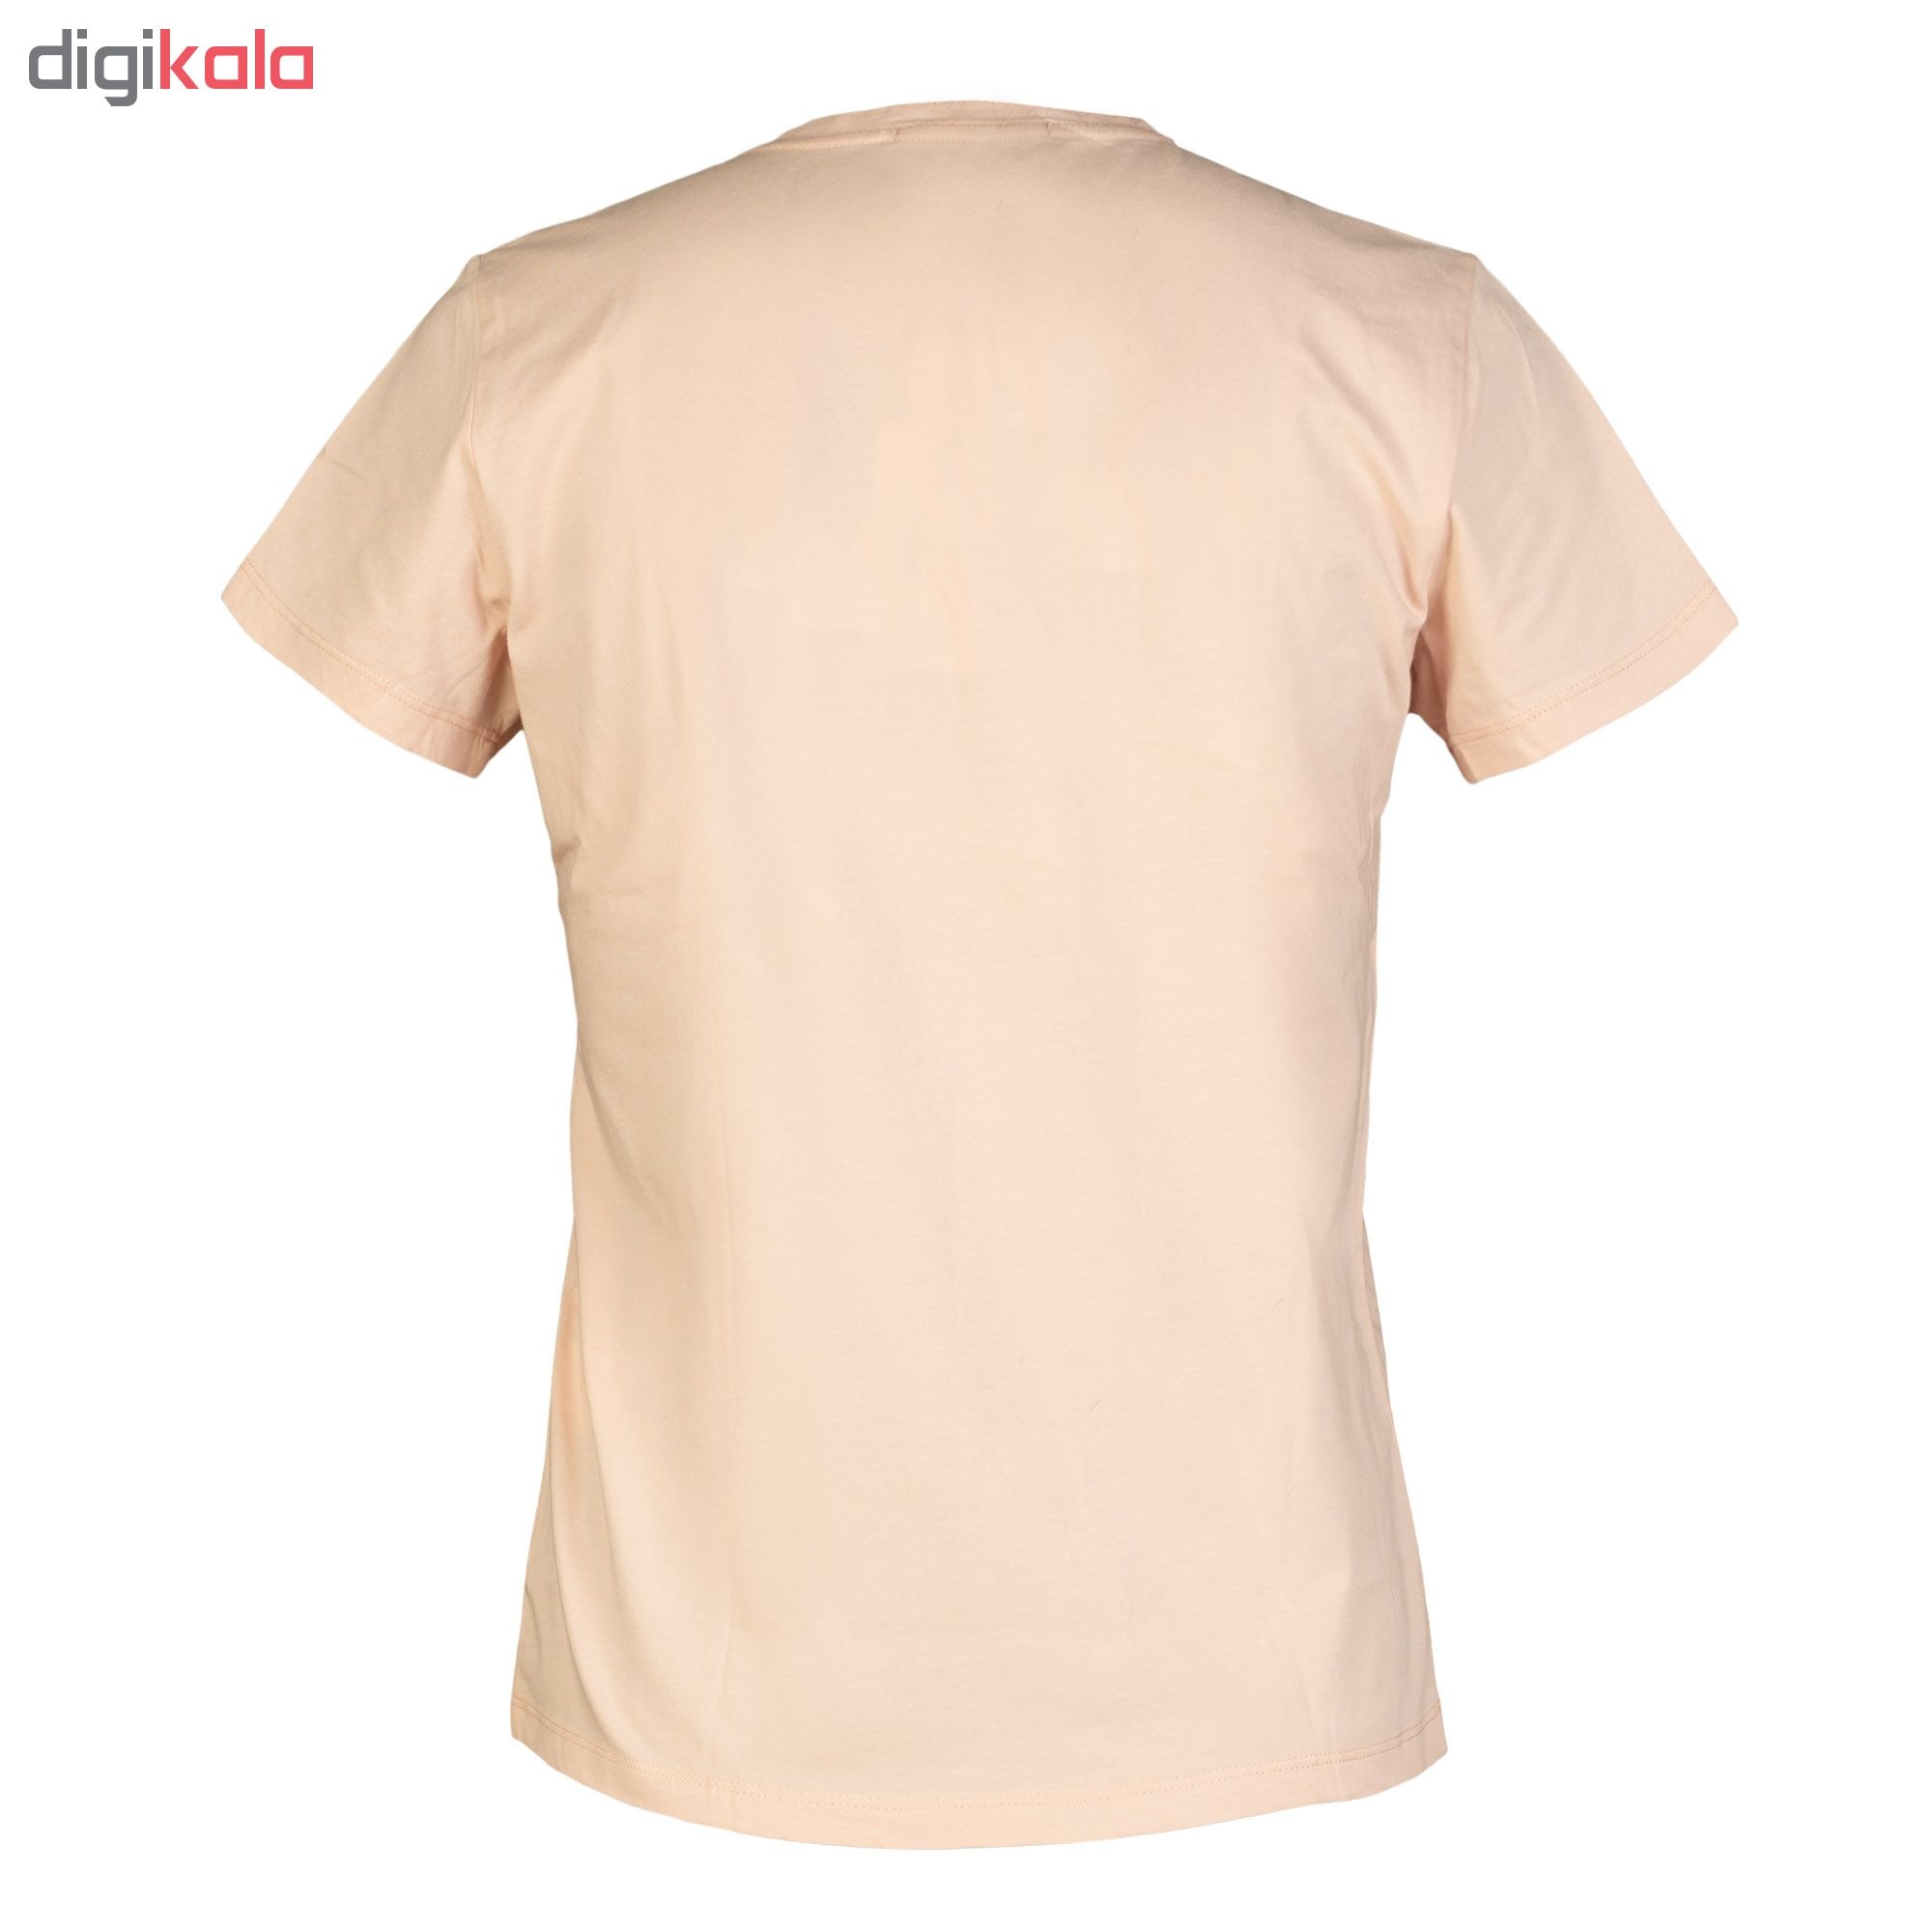 تي شرت نه سیاوود مدل V-BASIC کد 6100400-P0117 رنگ صورتی روشن